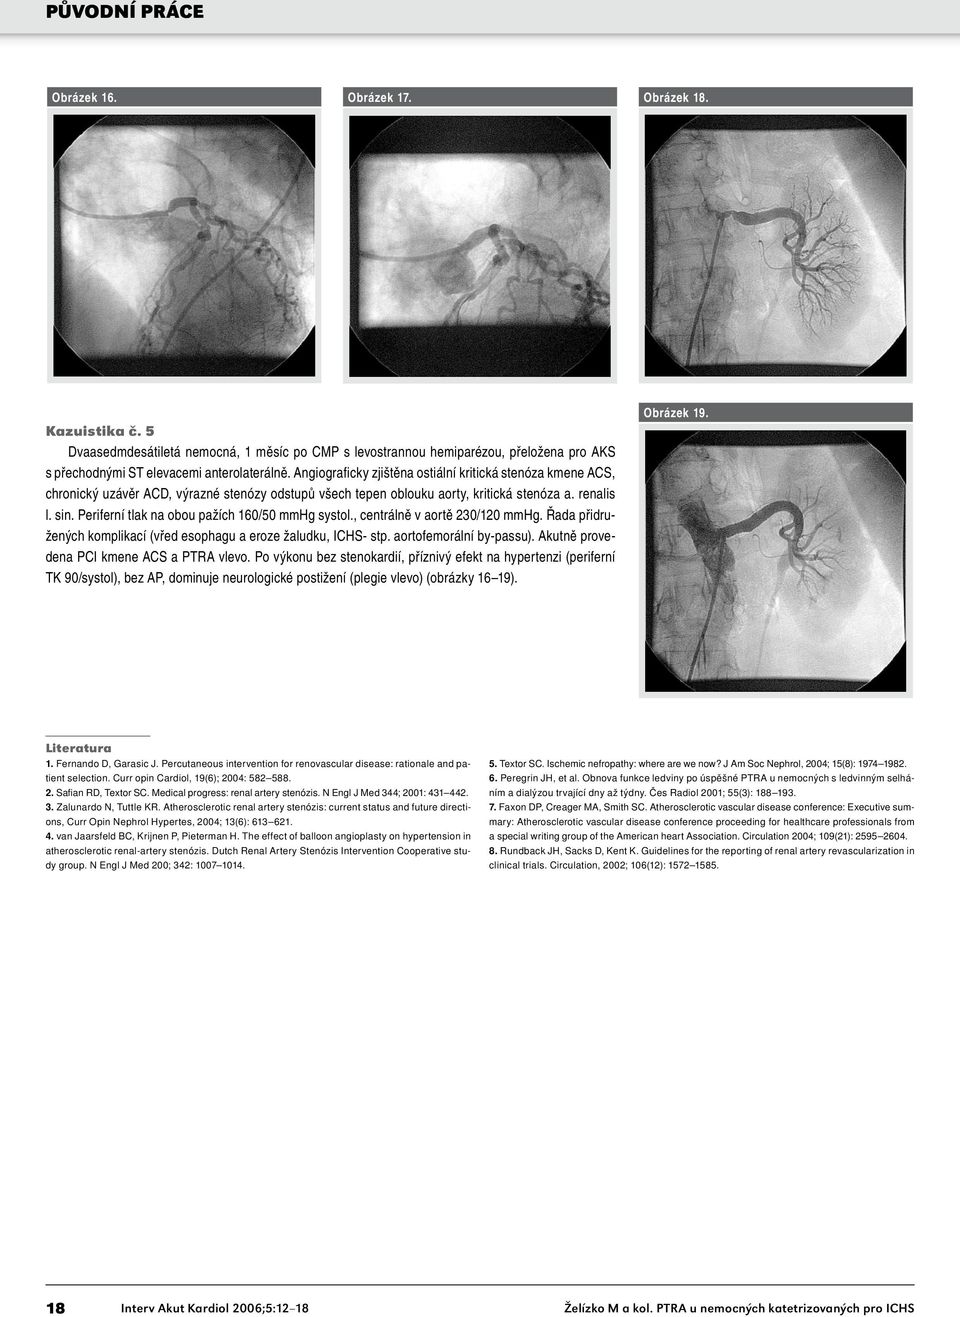 Periferní tlak na obou pažích 160/50 mmhg systol., centrálně v aortě 230/120 mmhg. Řada přidružených komplikací (vřed esophagu a eroze žaludku, ICHS- stp. aortofemorální by-passu).